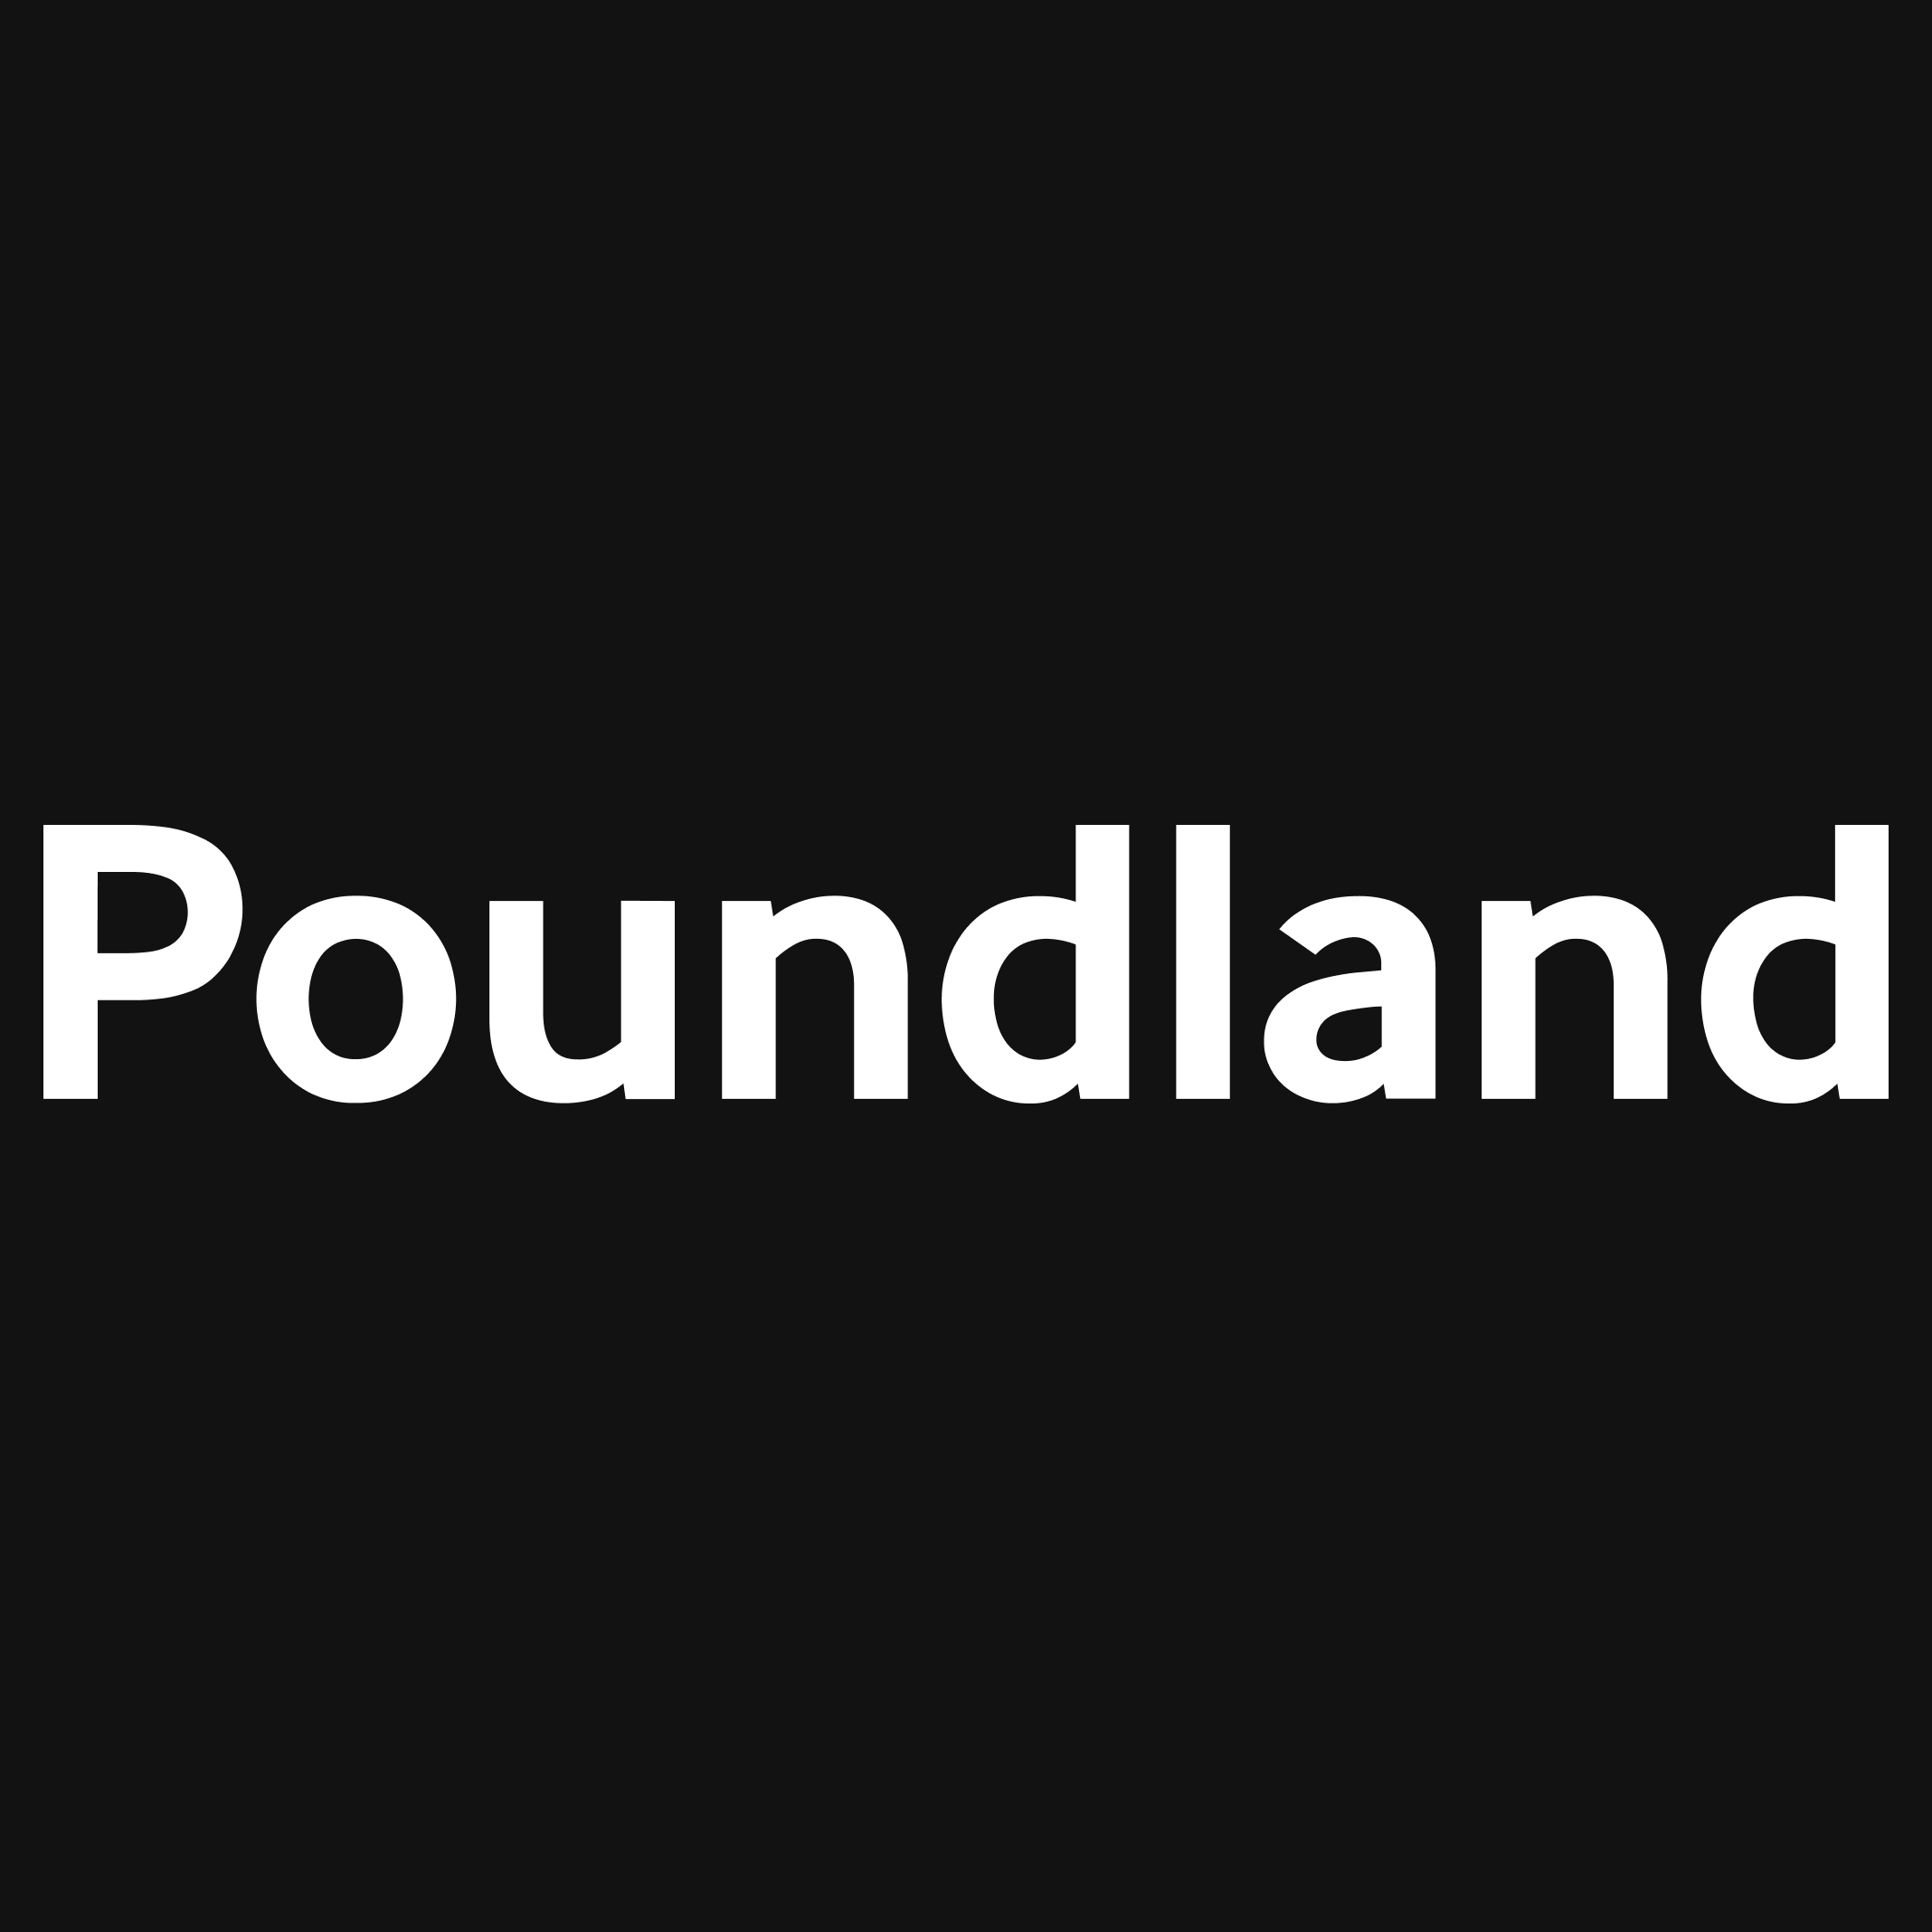 Poundland Homepage Image